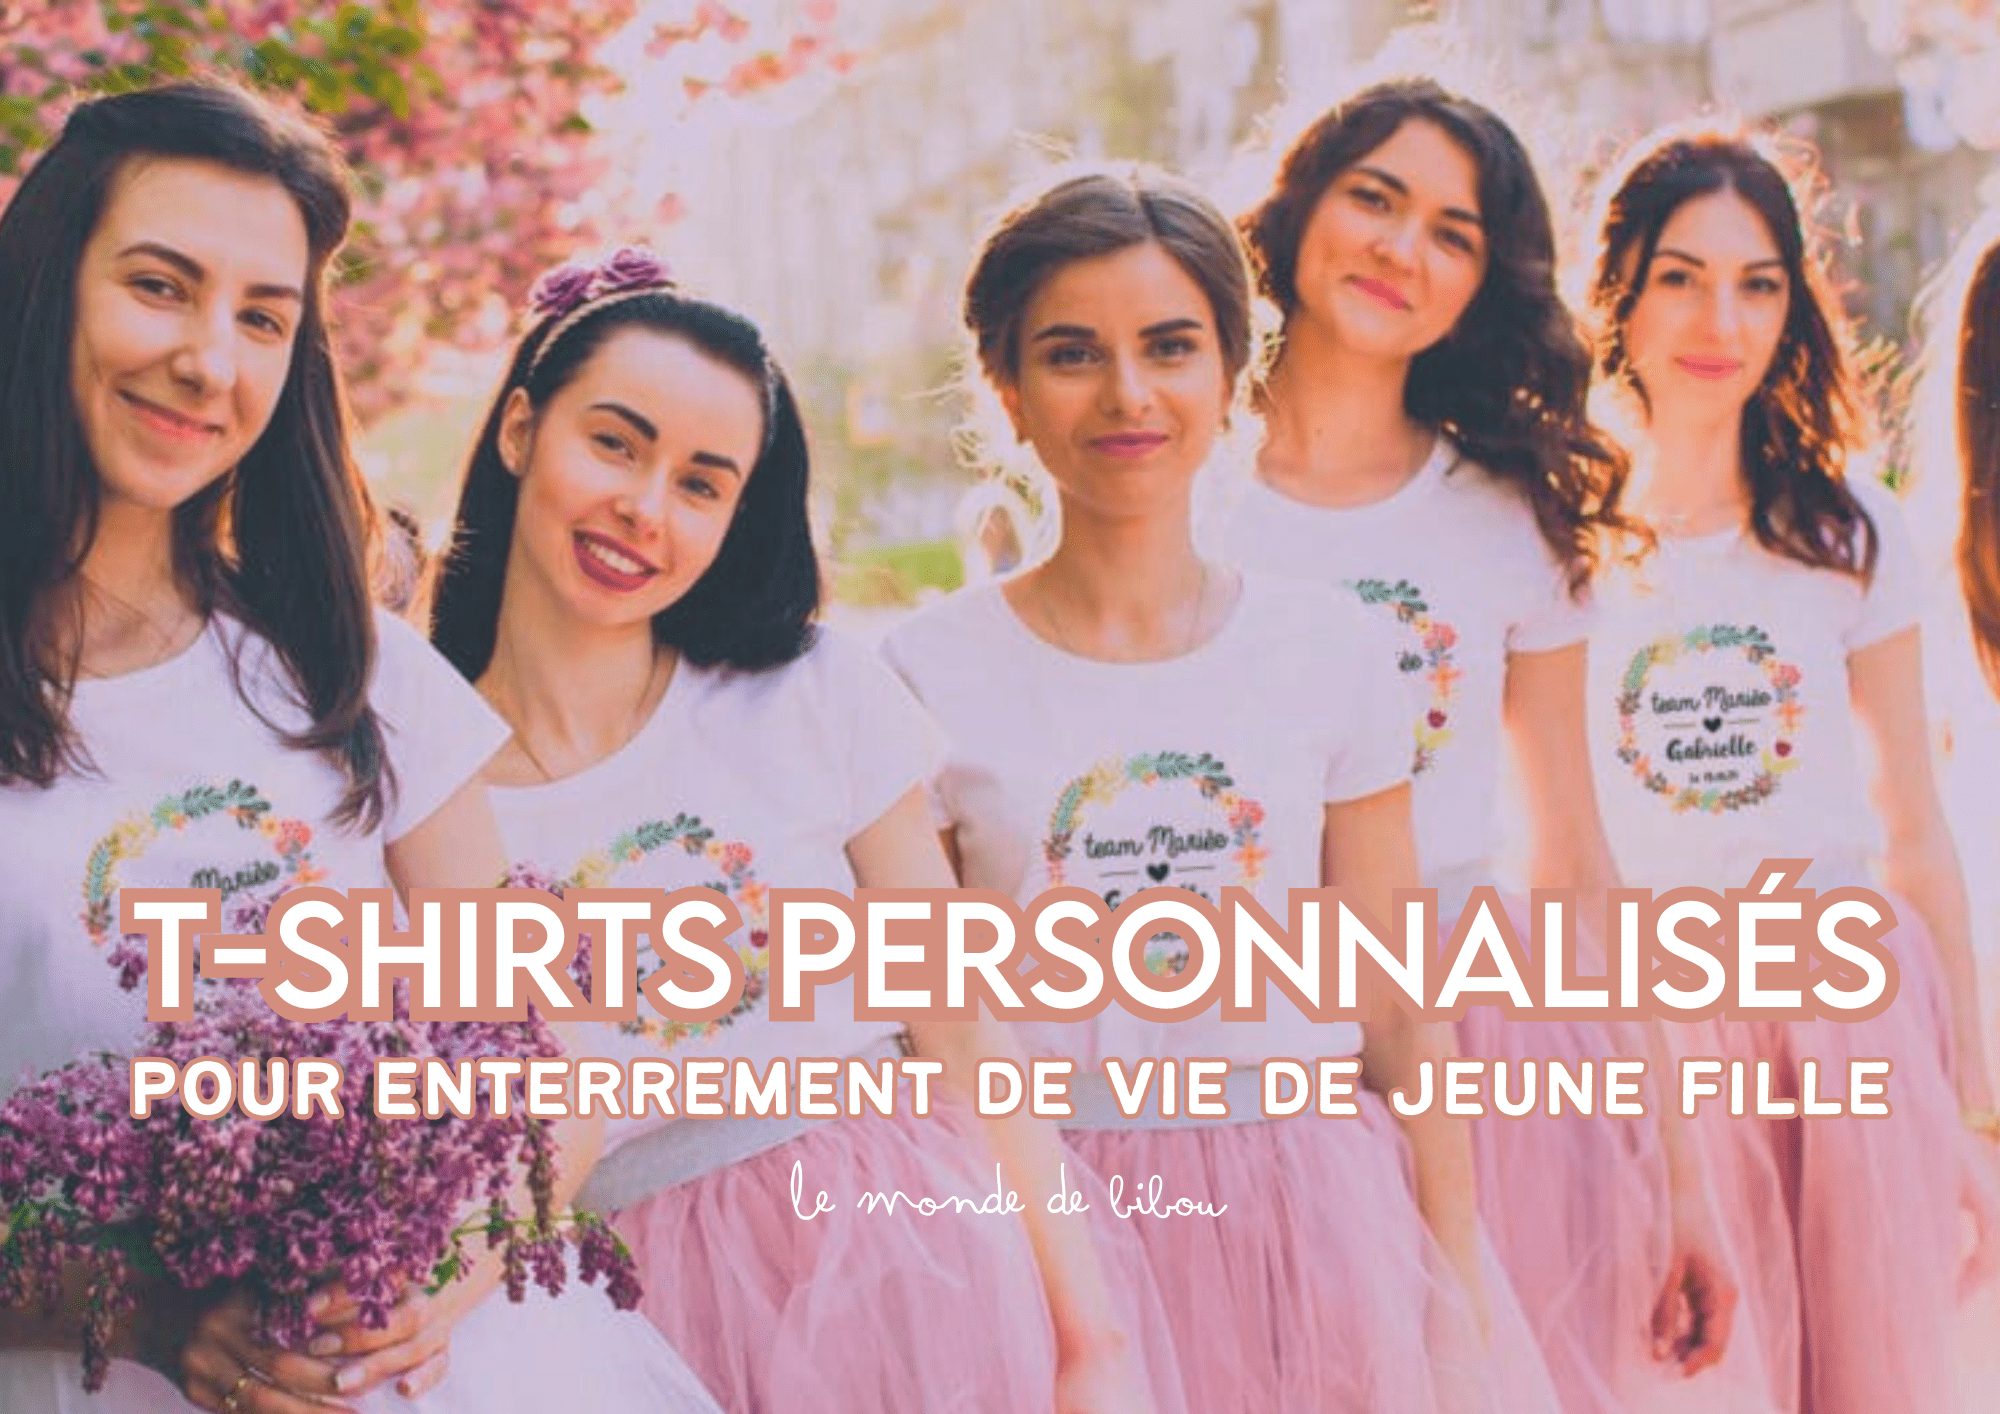 Des T-shirts personnalisés pour Enterrement de Vie de Jeune fille